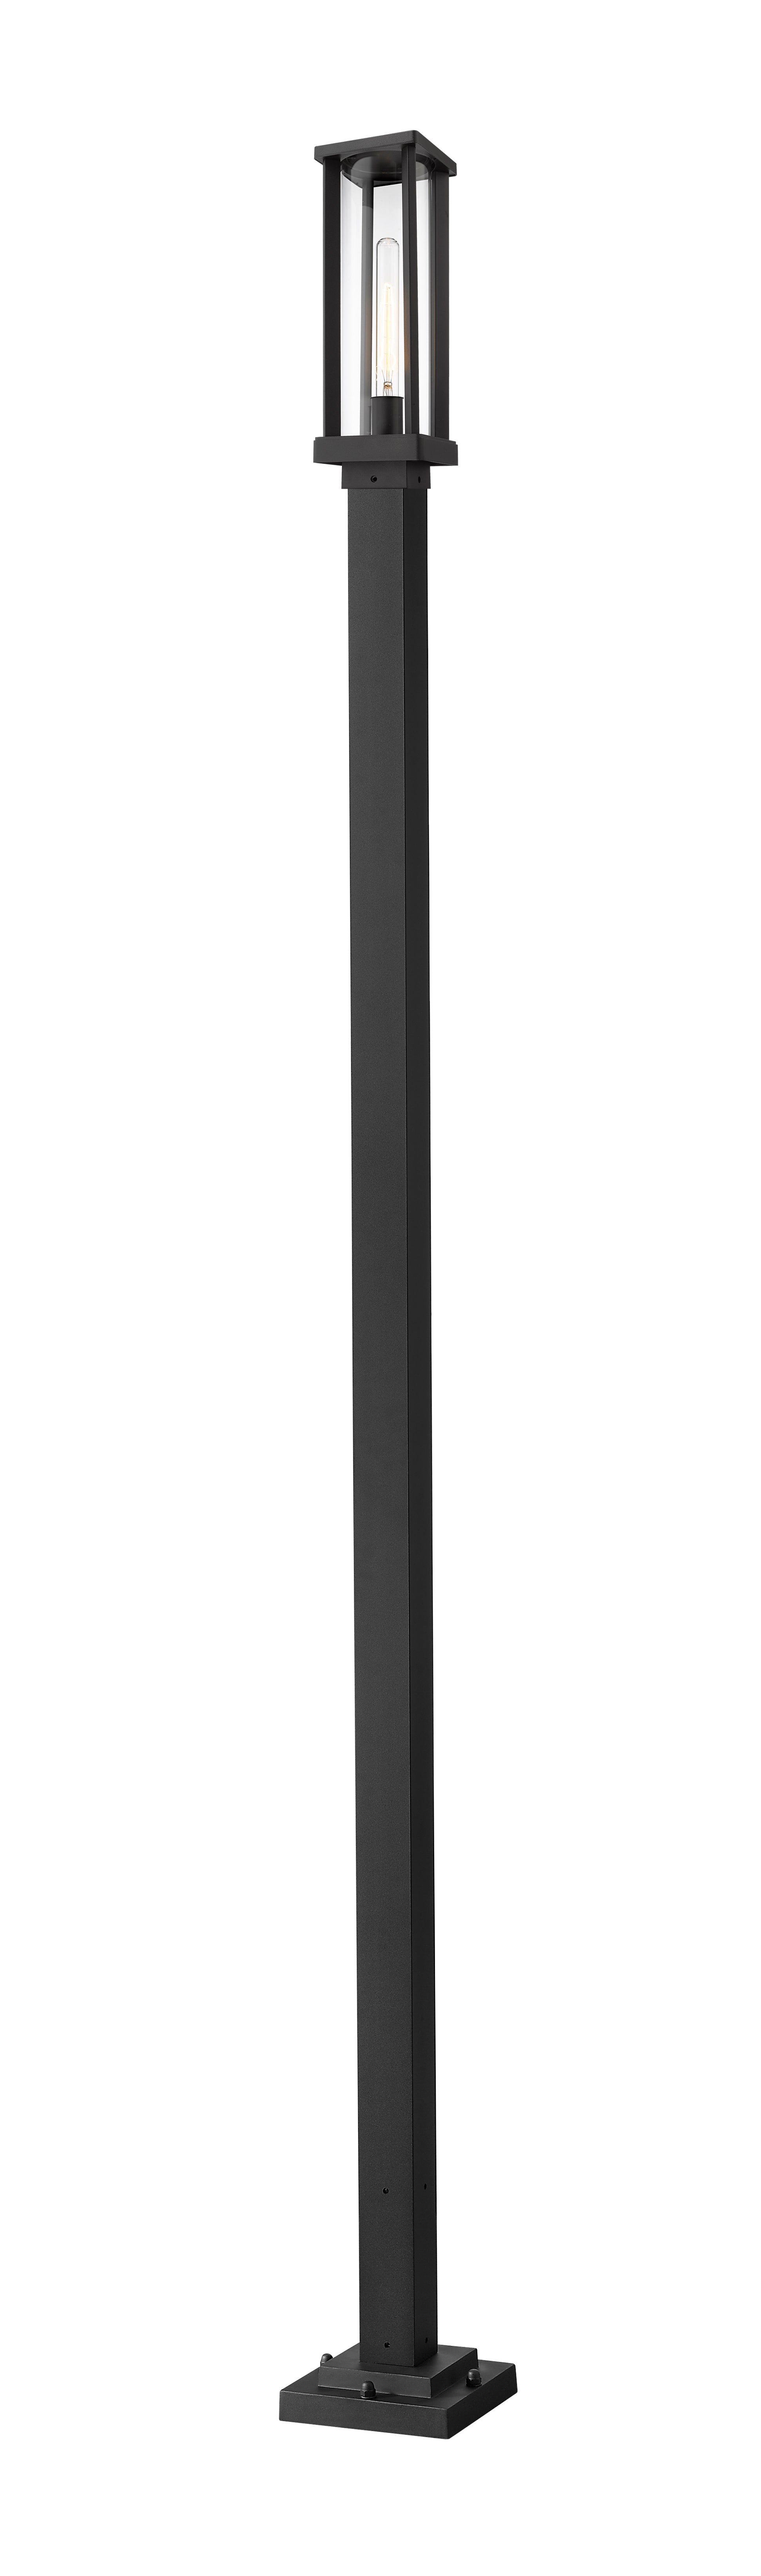 GLENWOOD Luminaire sur poteau Noir - 586PHMS-536P-BK | Z-LITE